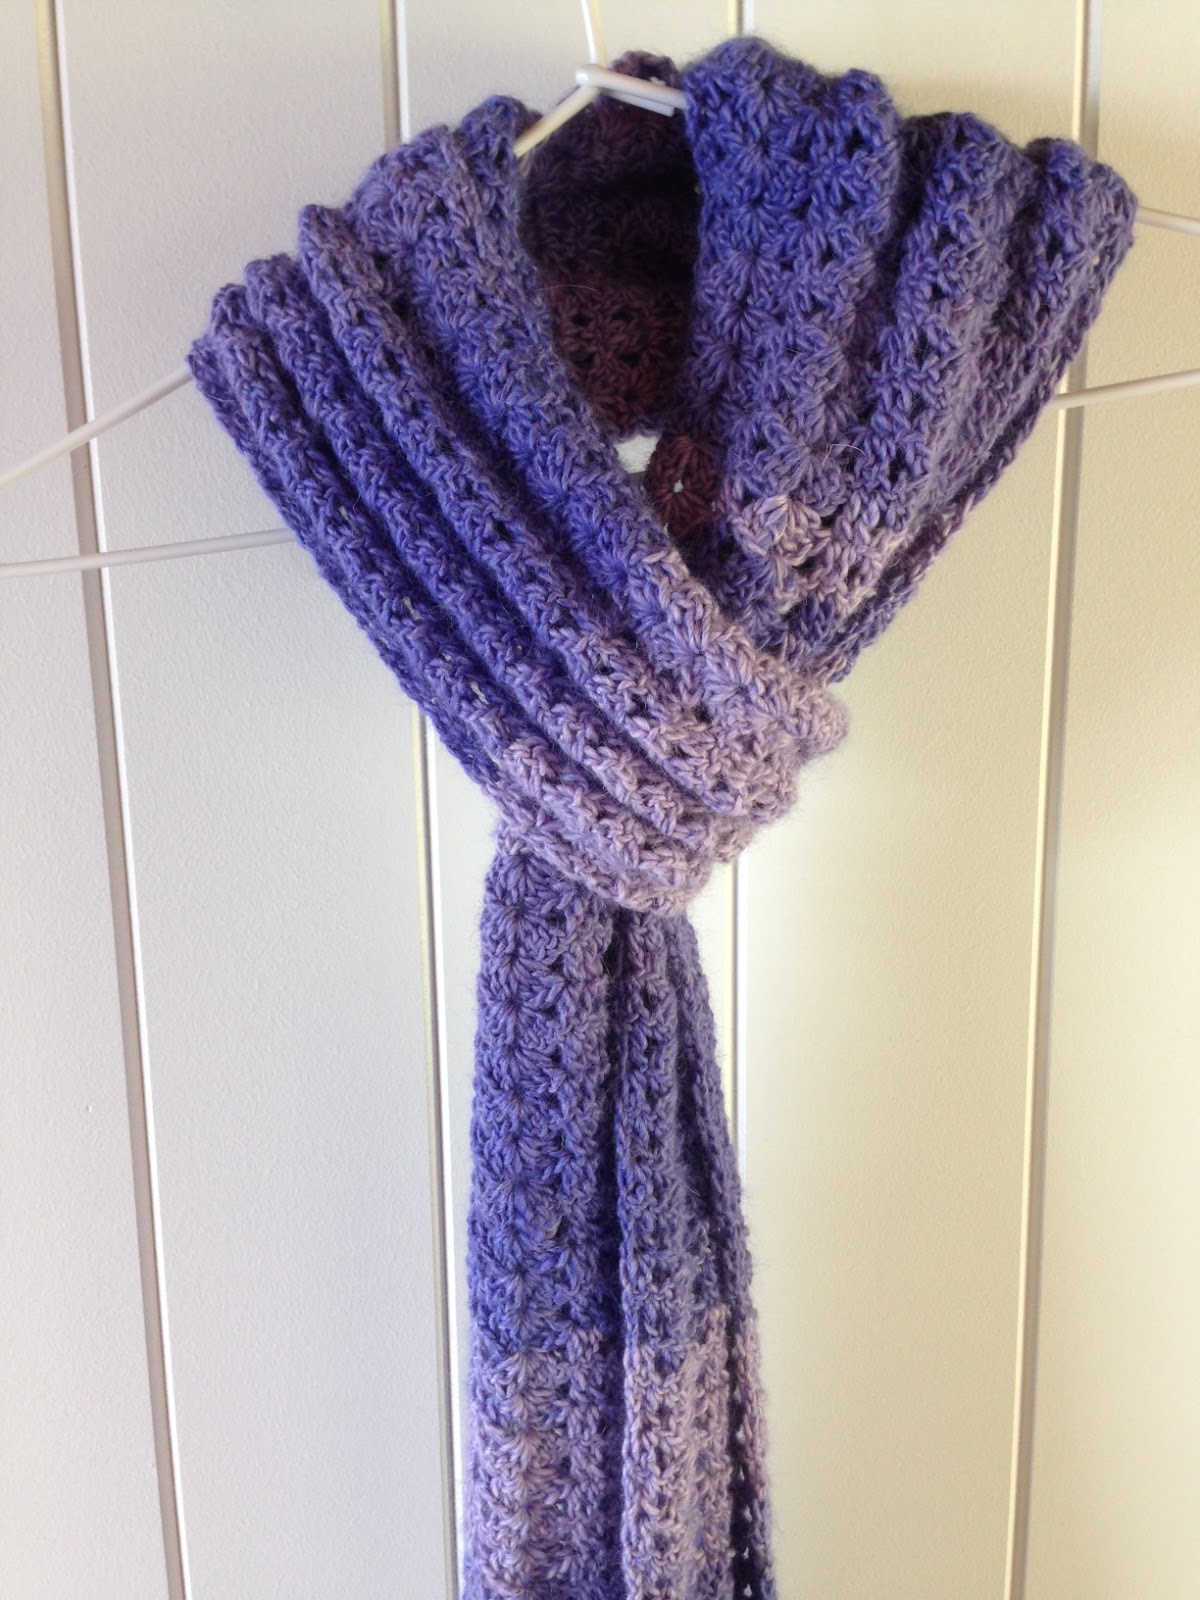 Crochet Obsession: Women’s crochet scarf using 100% alpaca yarn - in violet